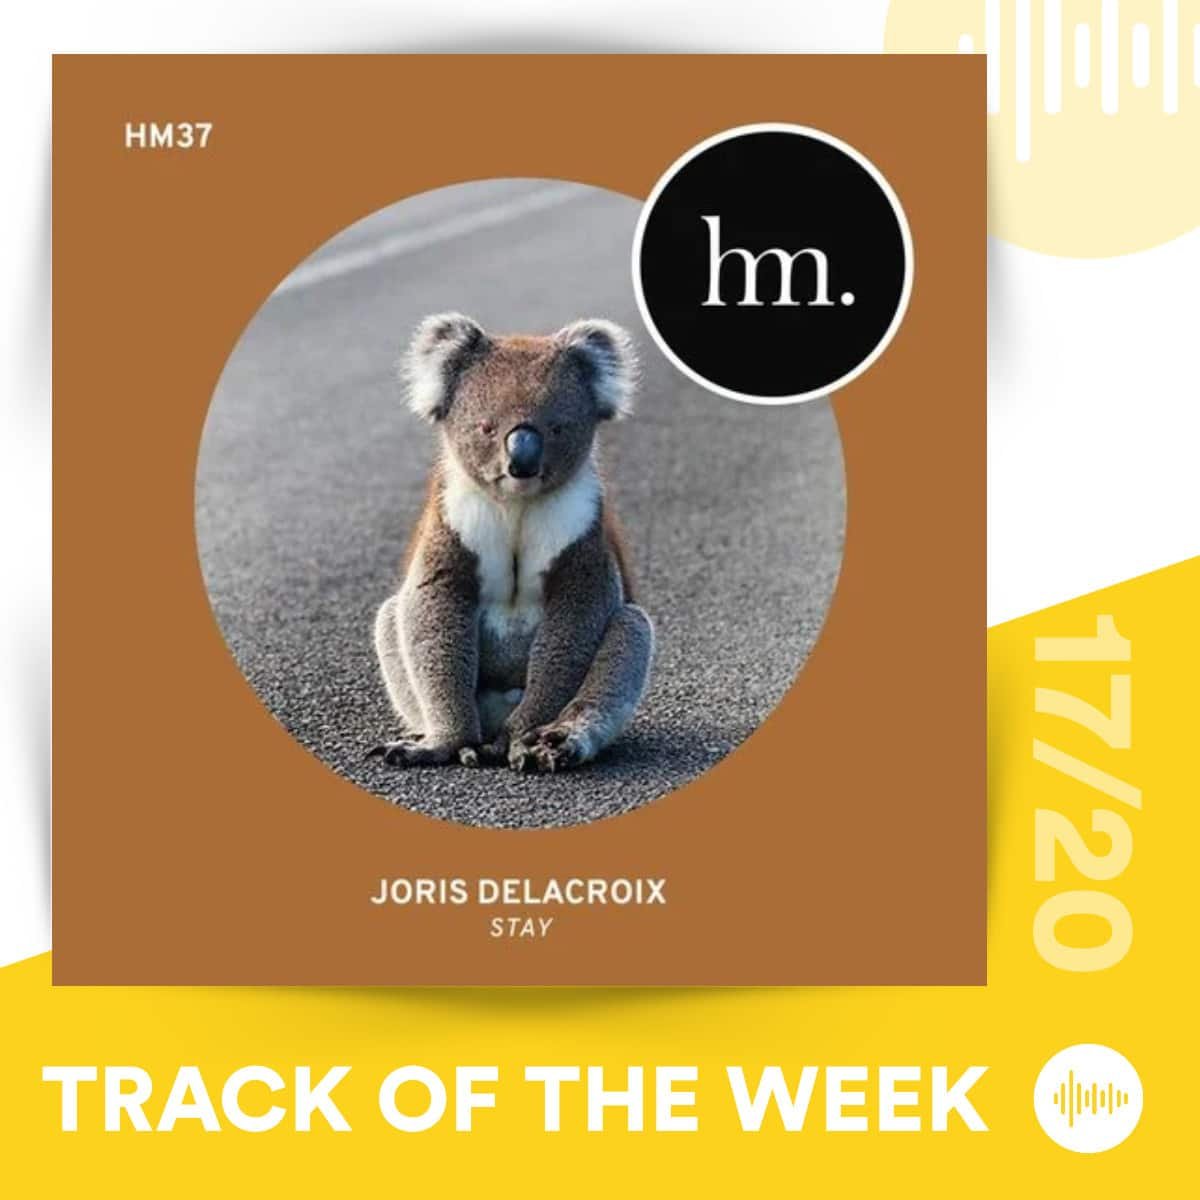 Track of the Week 17/20: Joris Delacroix - Stay